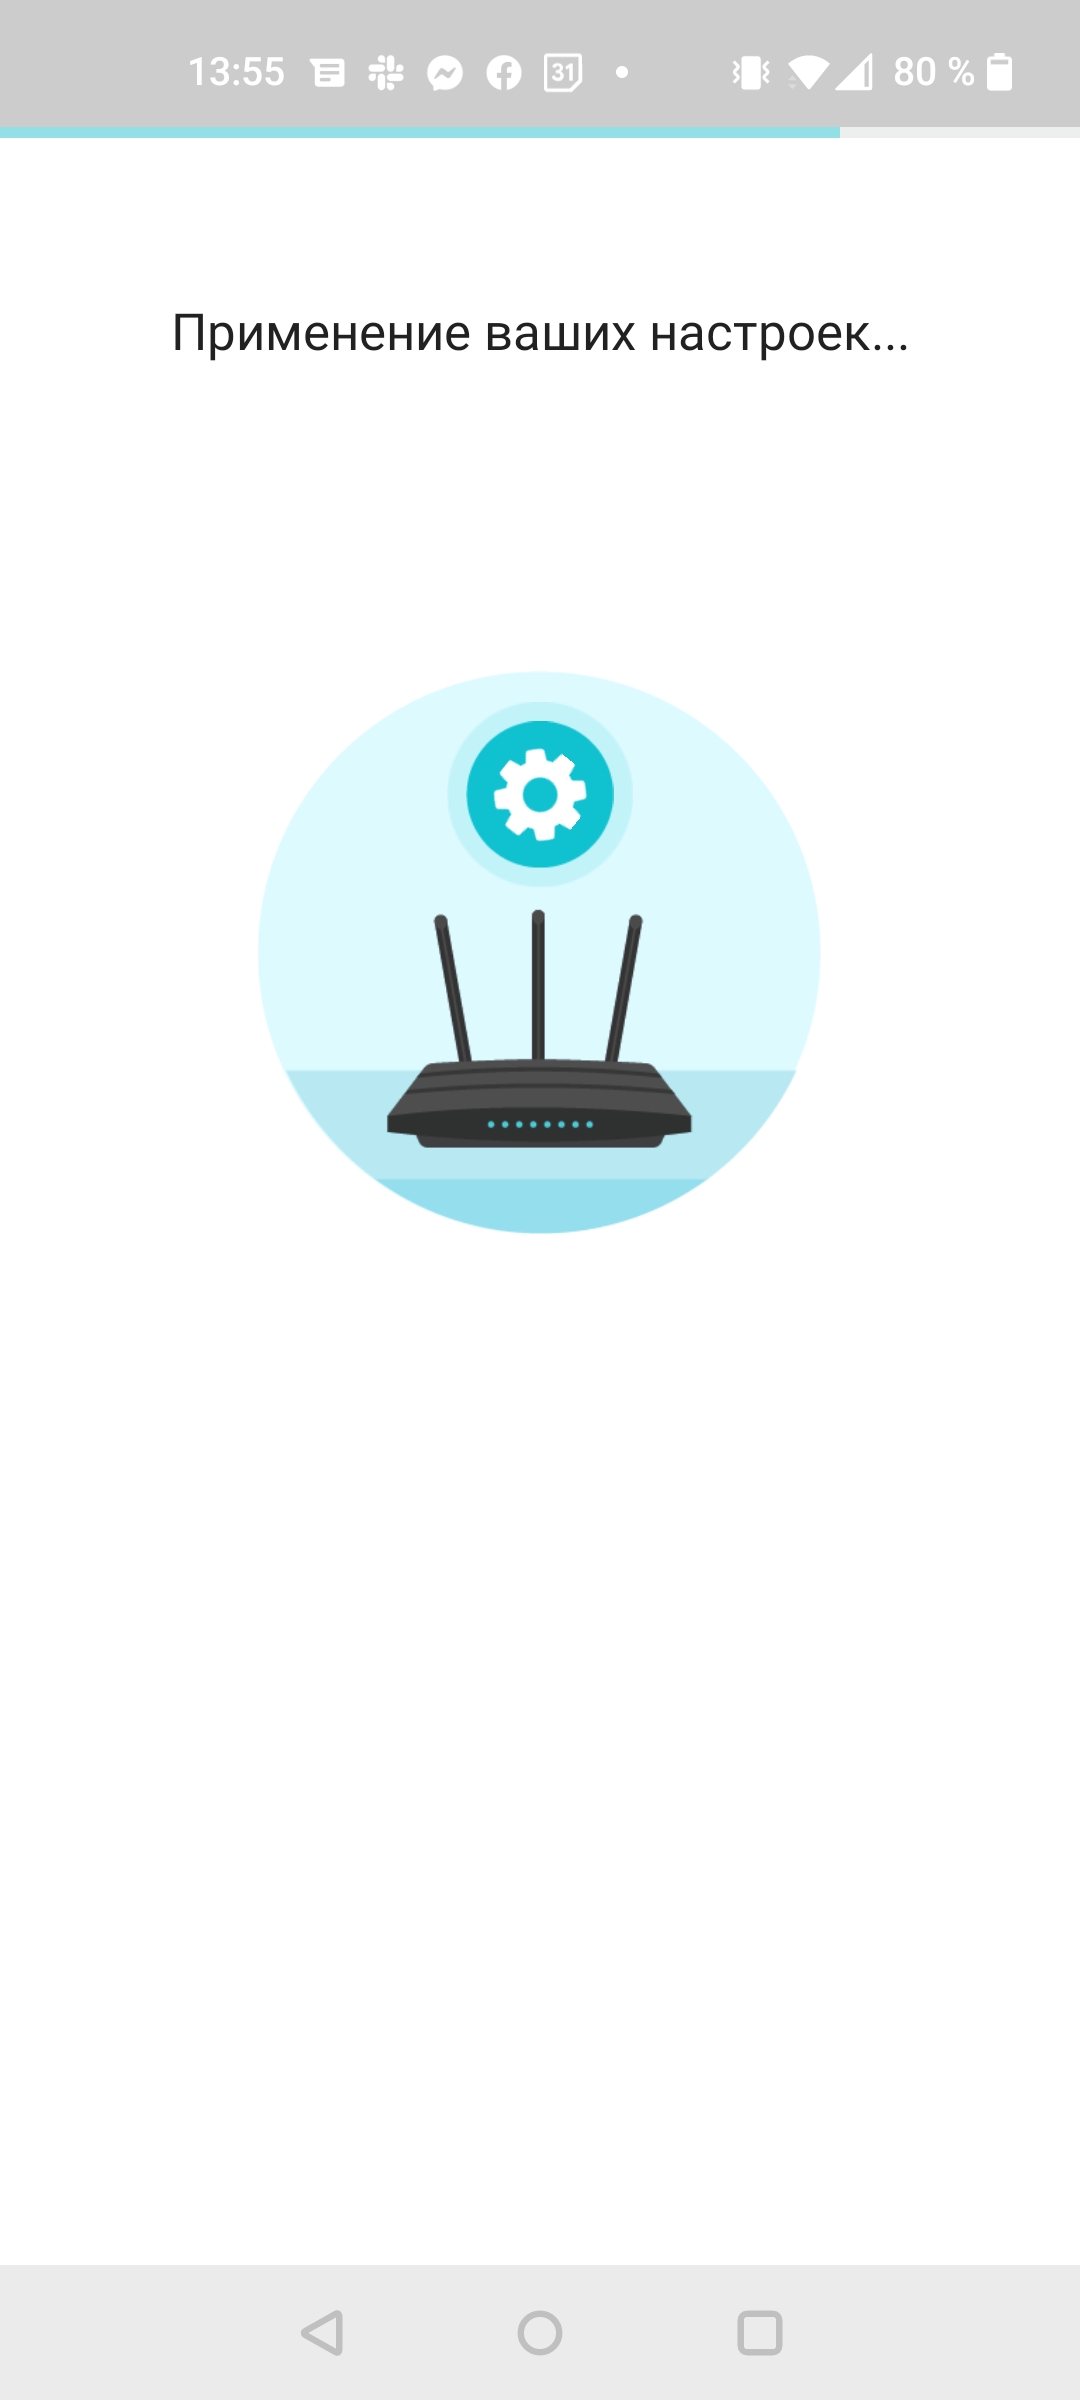 Бесшовная домашняя сеть Wi-Fi 6: обзор роутера TP-Link Archer AX23-40